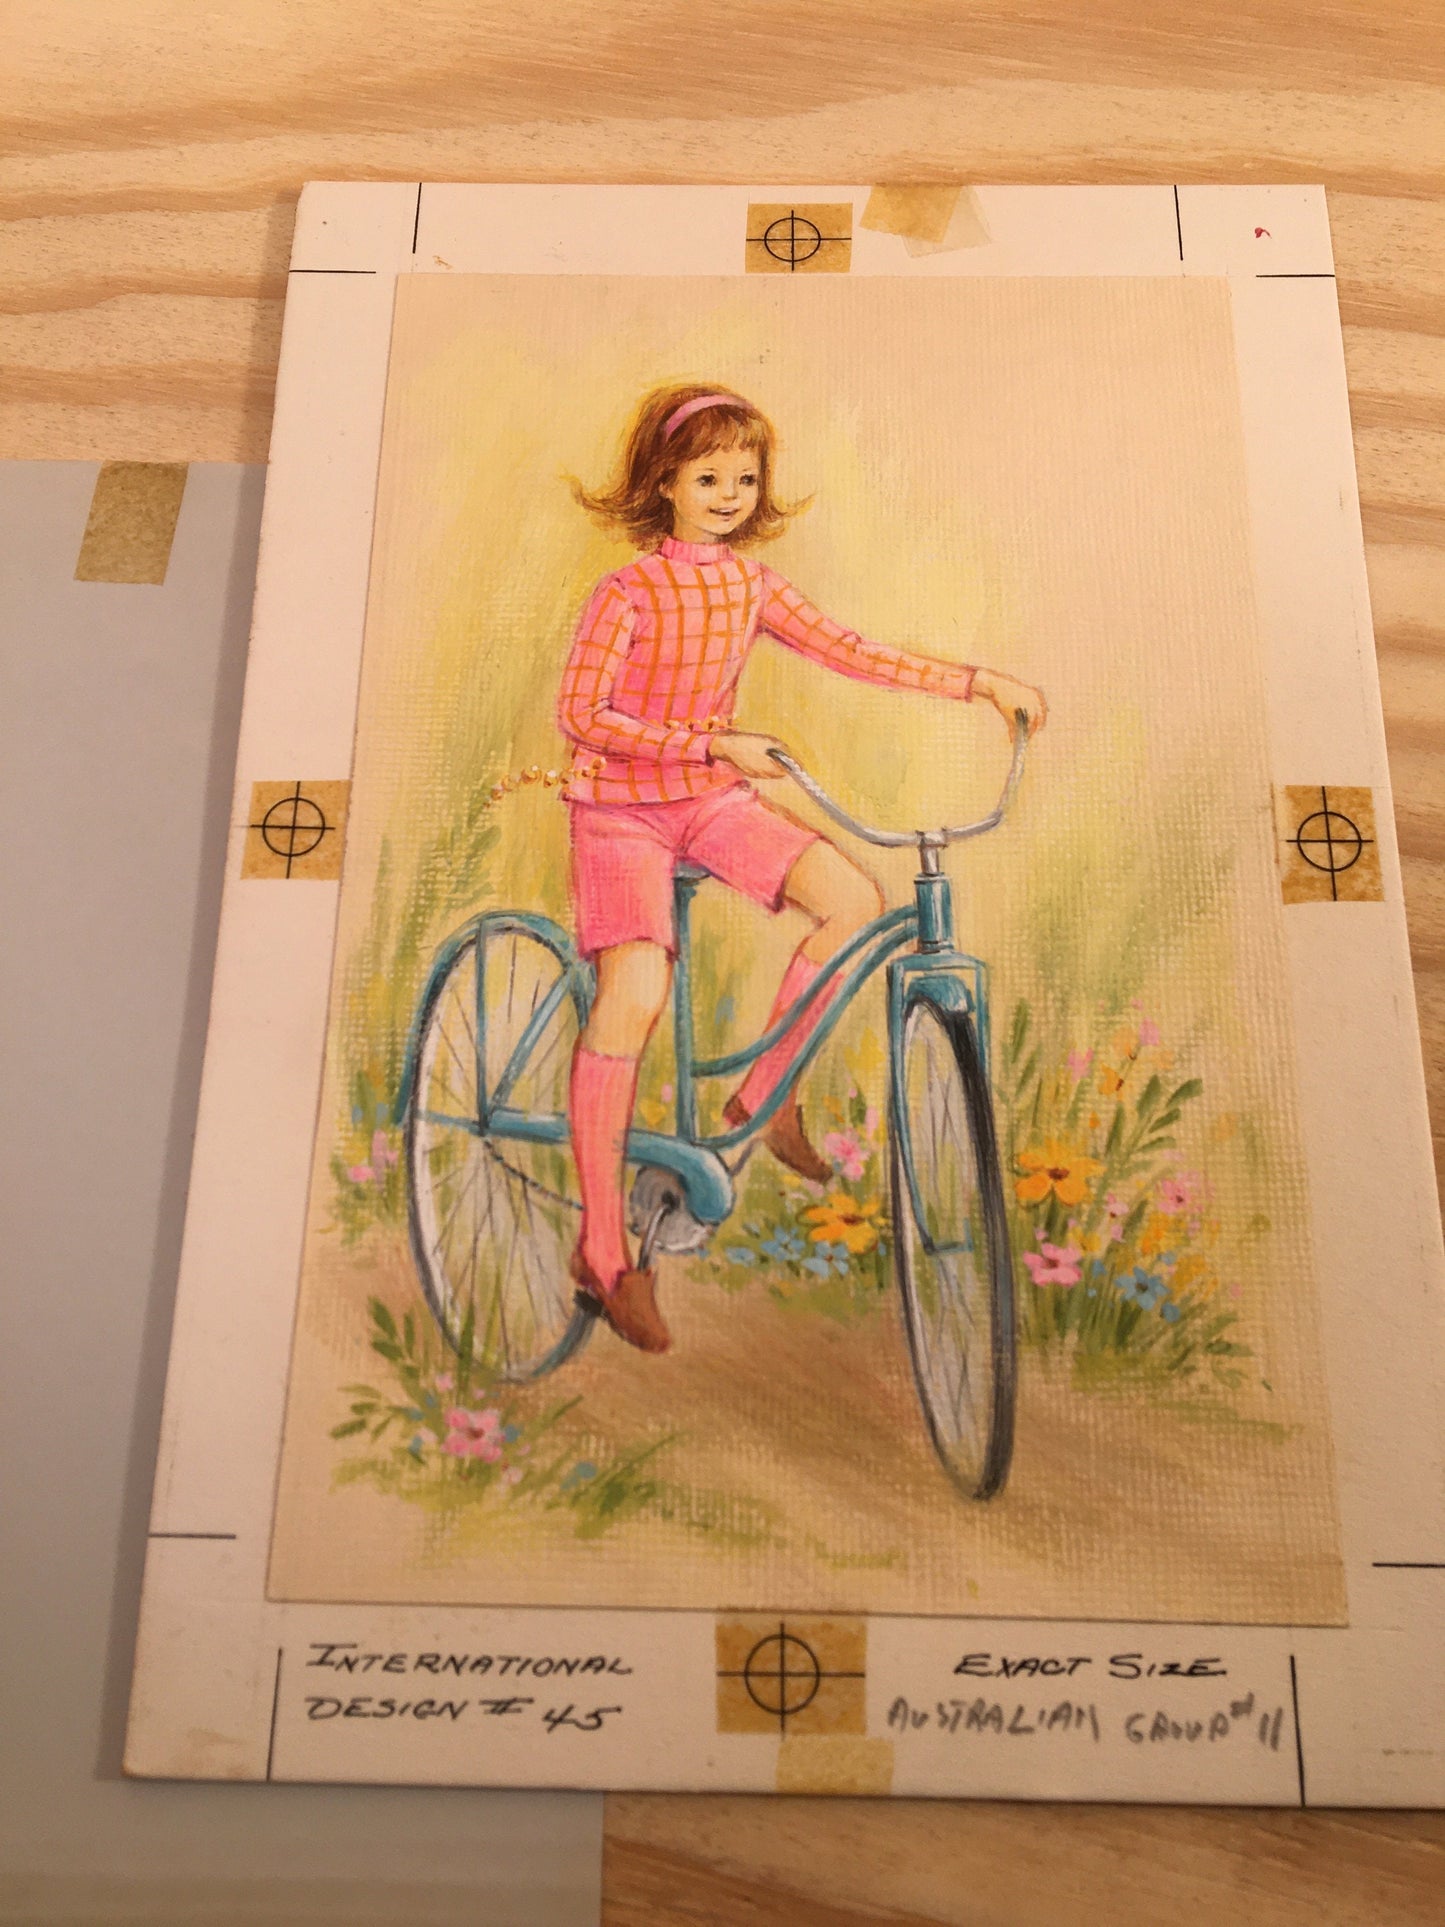 Vintage Artwork - Groovy Girl on Bicycle - 1960's Kids Art